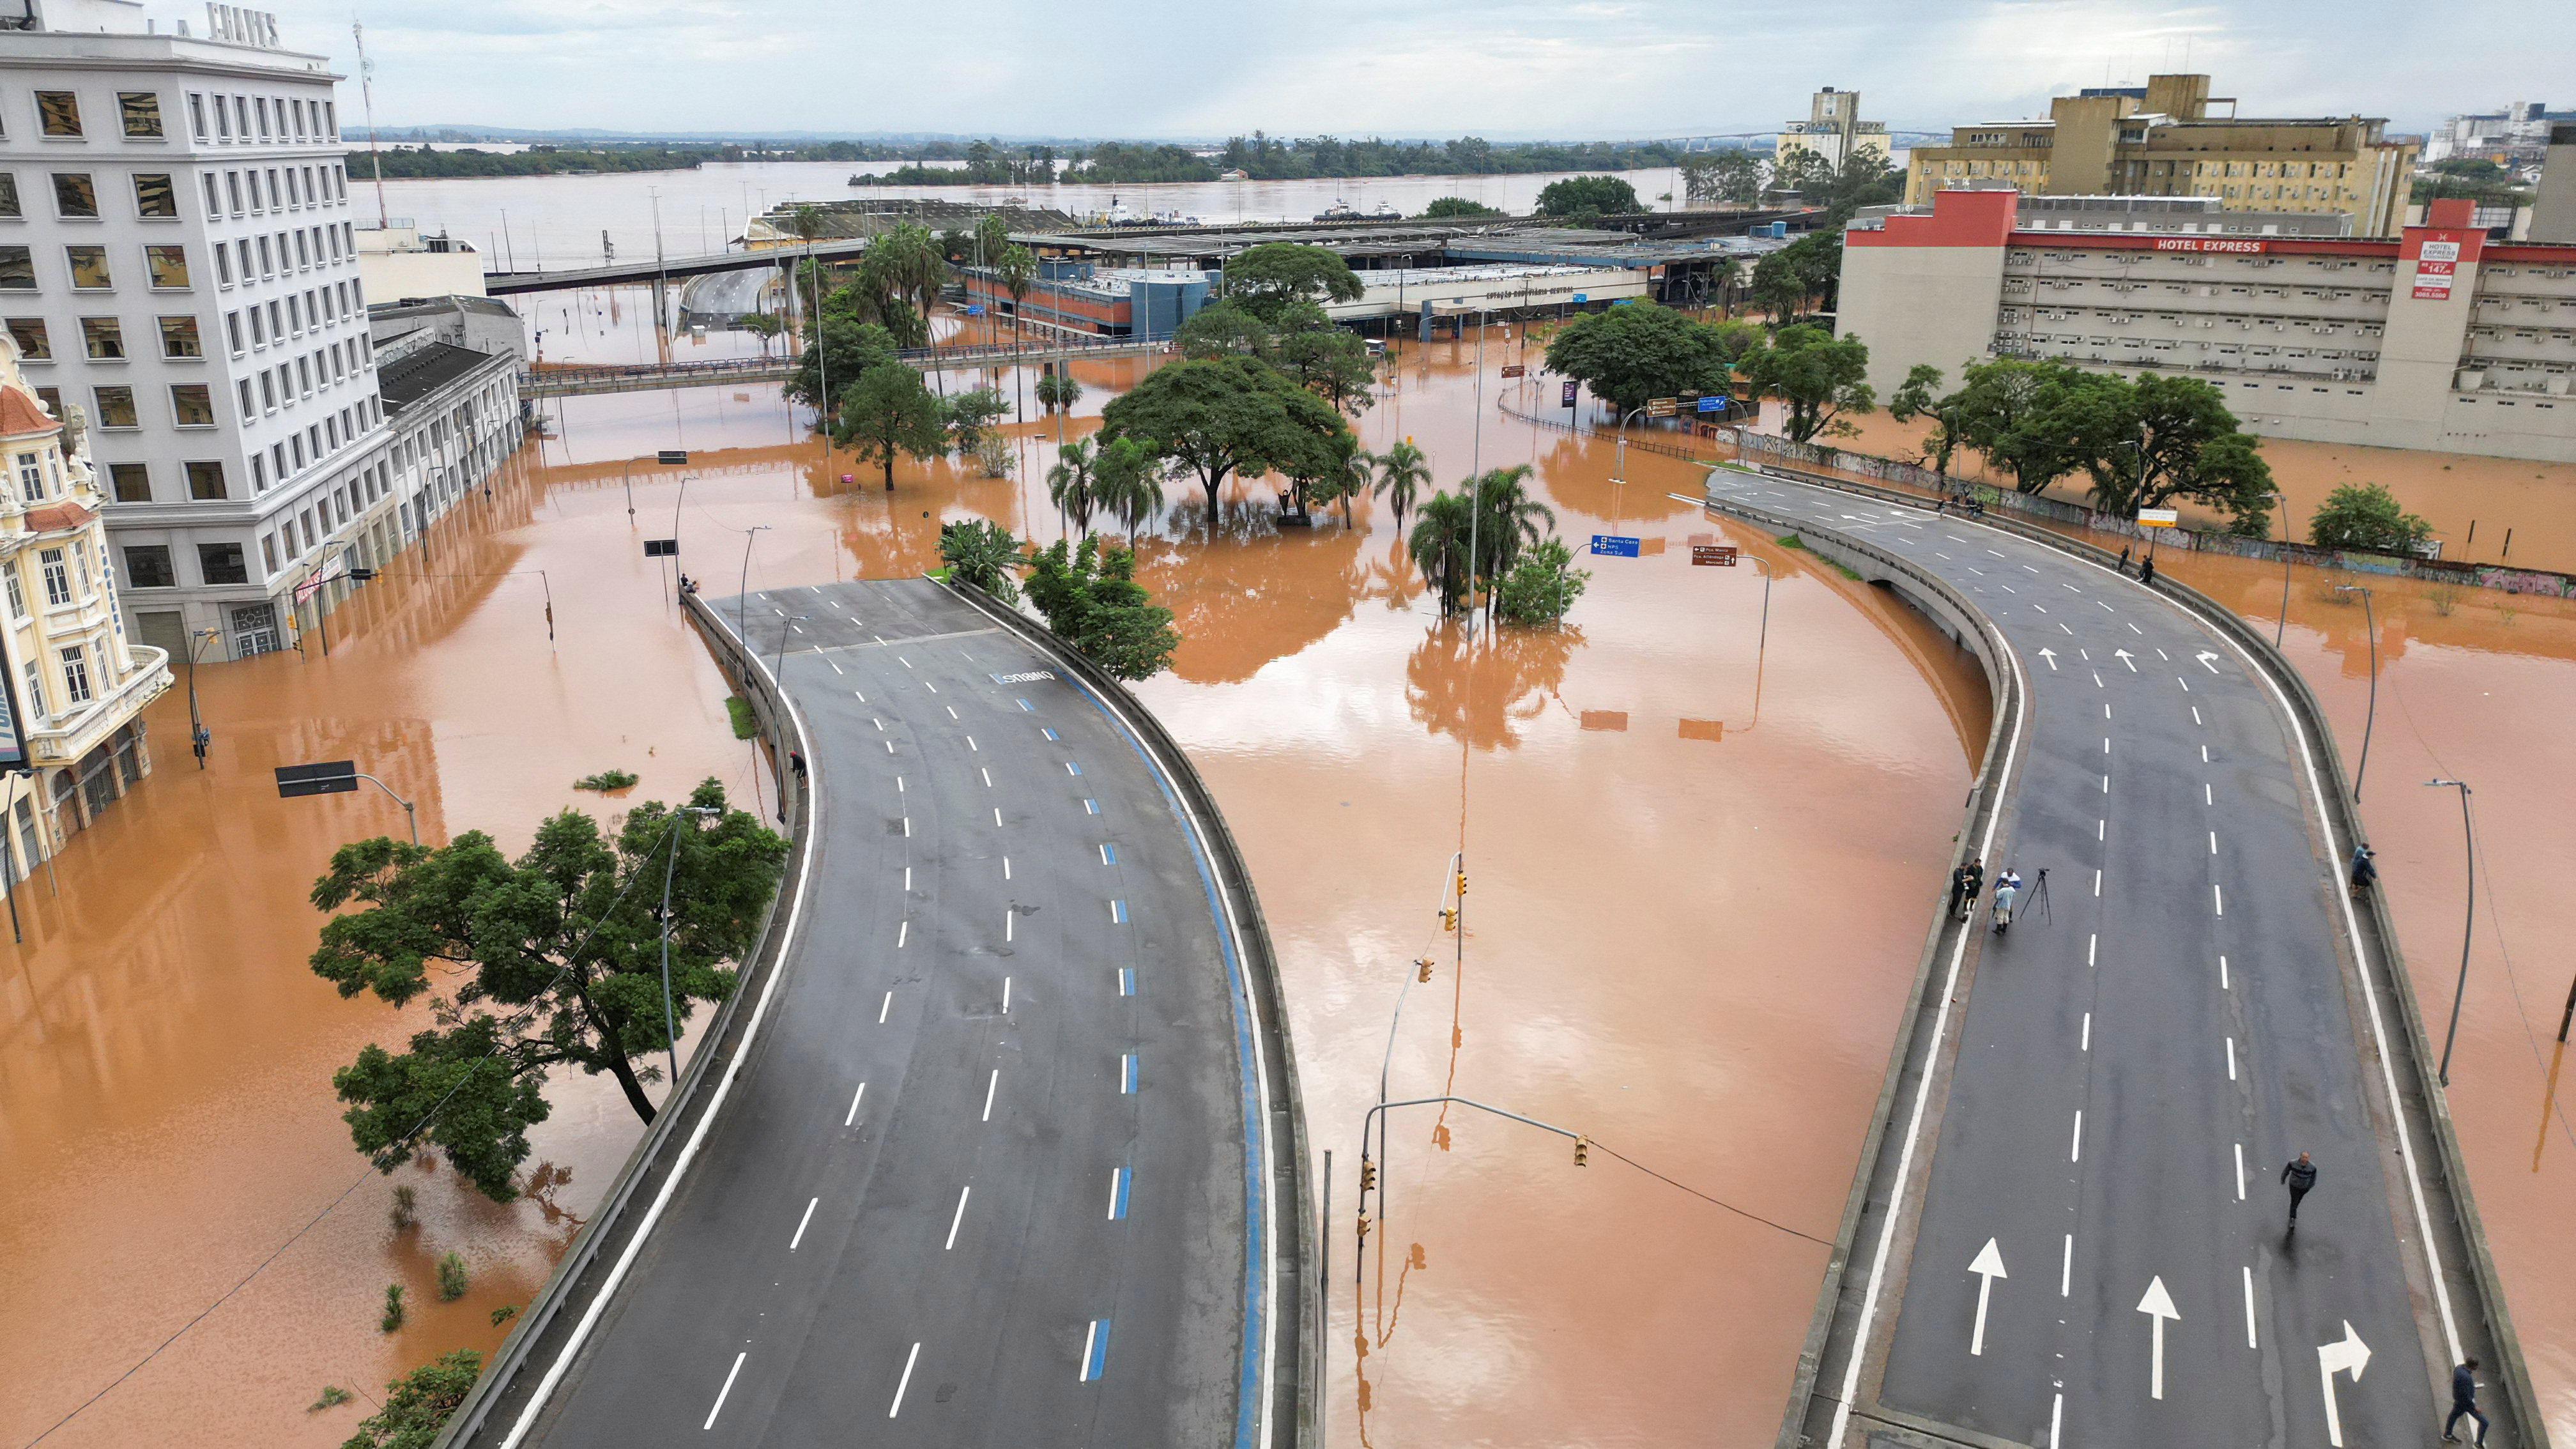 Flooding due to heavy rains in Porto Alegre in Rio Grande do Sul state